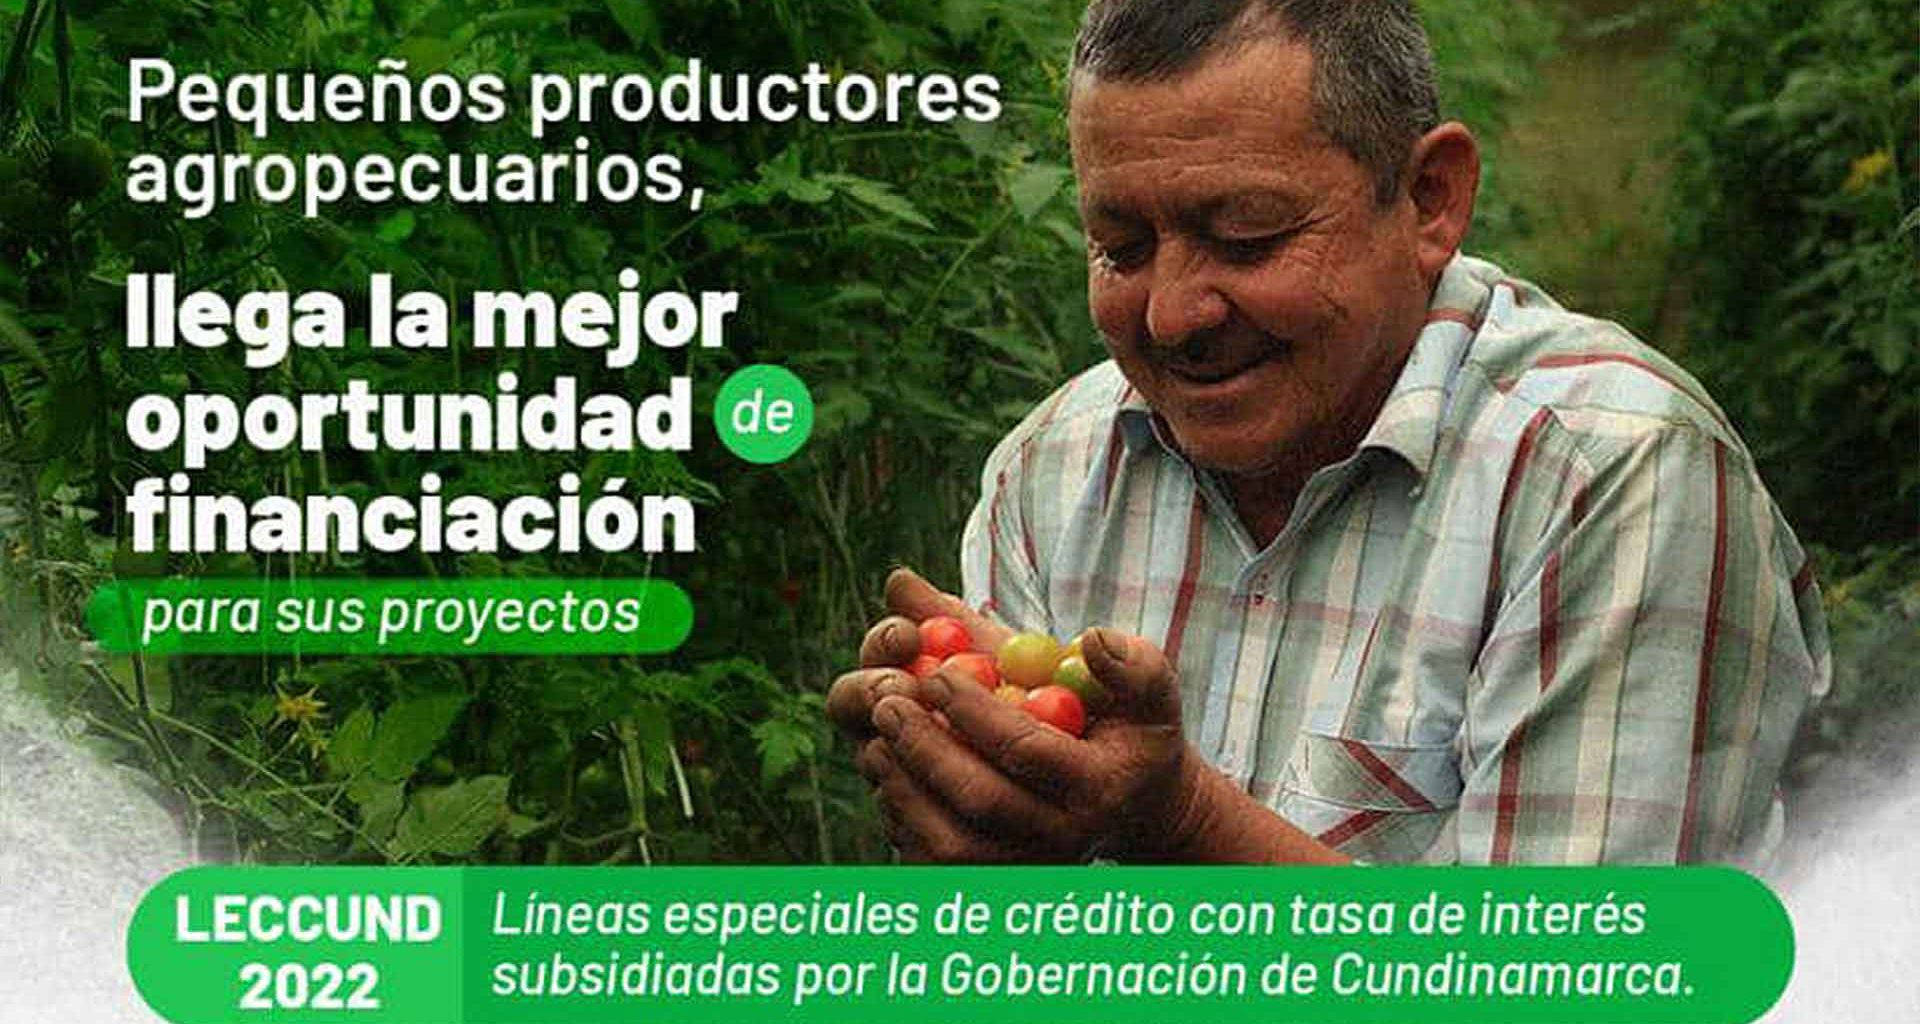 Ayudas del Banco Agrario para pequeños productores en